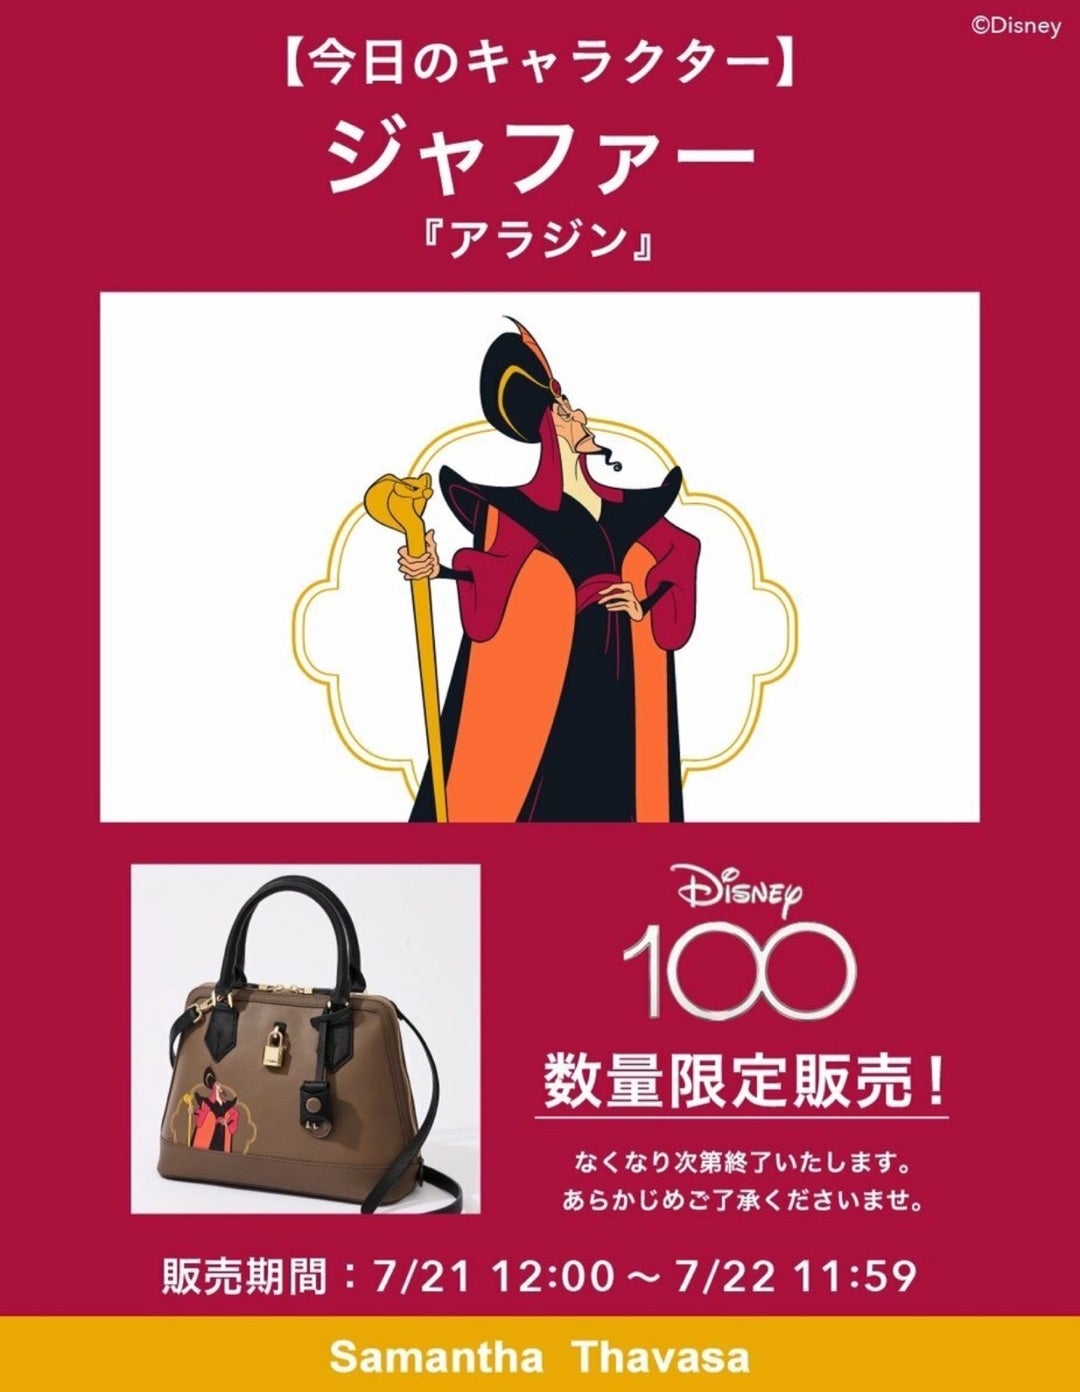 ディズニー100 Disney100 レディアゼル マリーちゃん サマンサ-